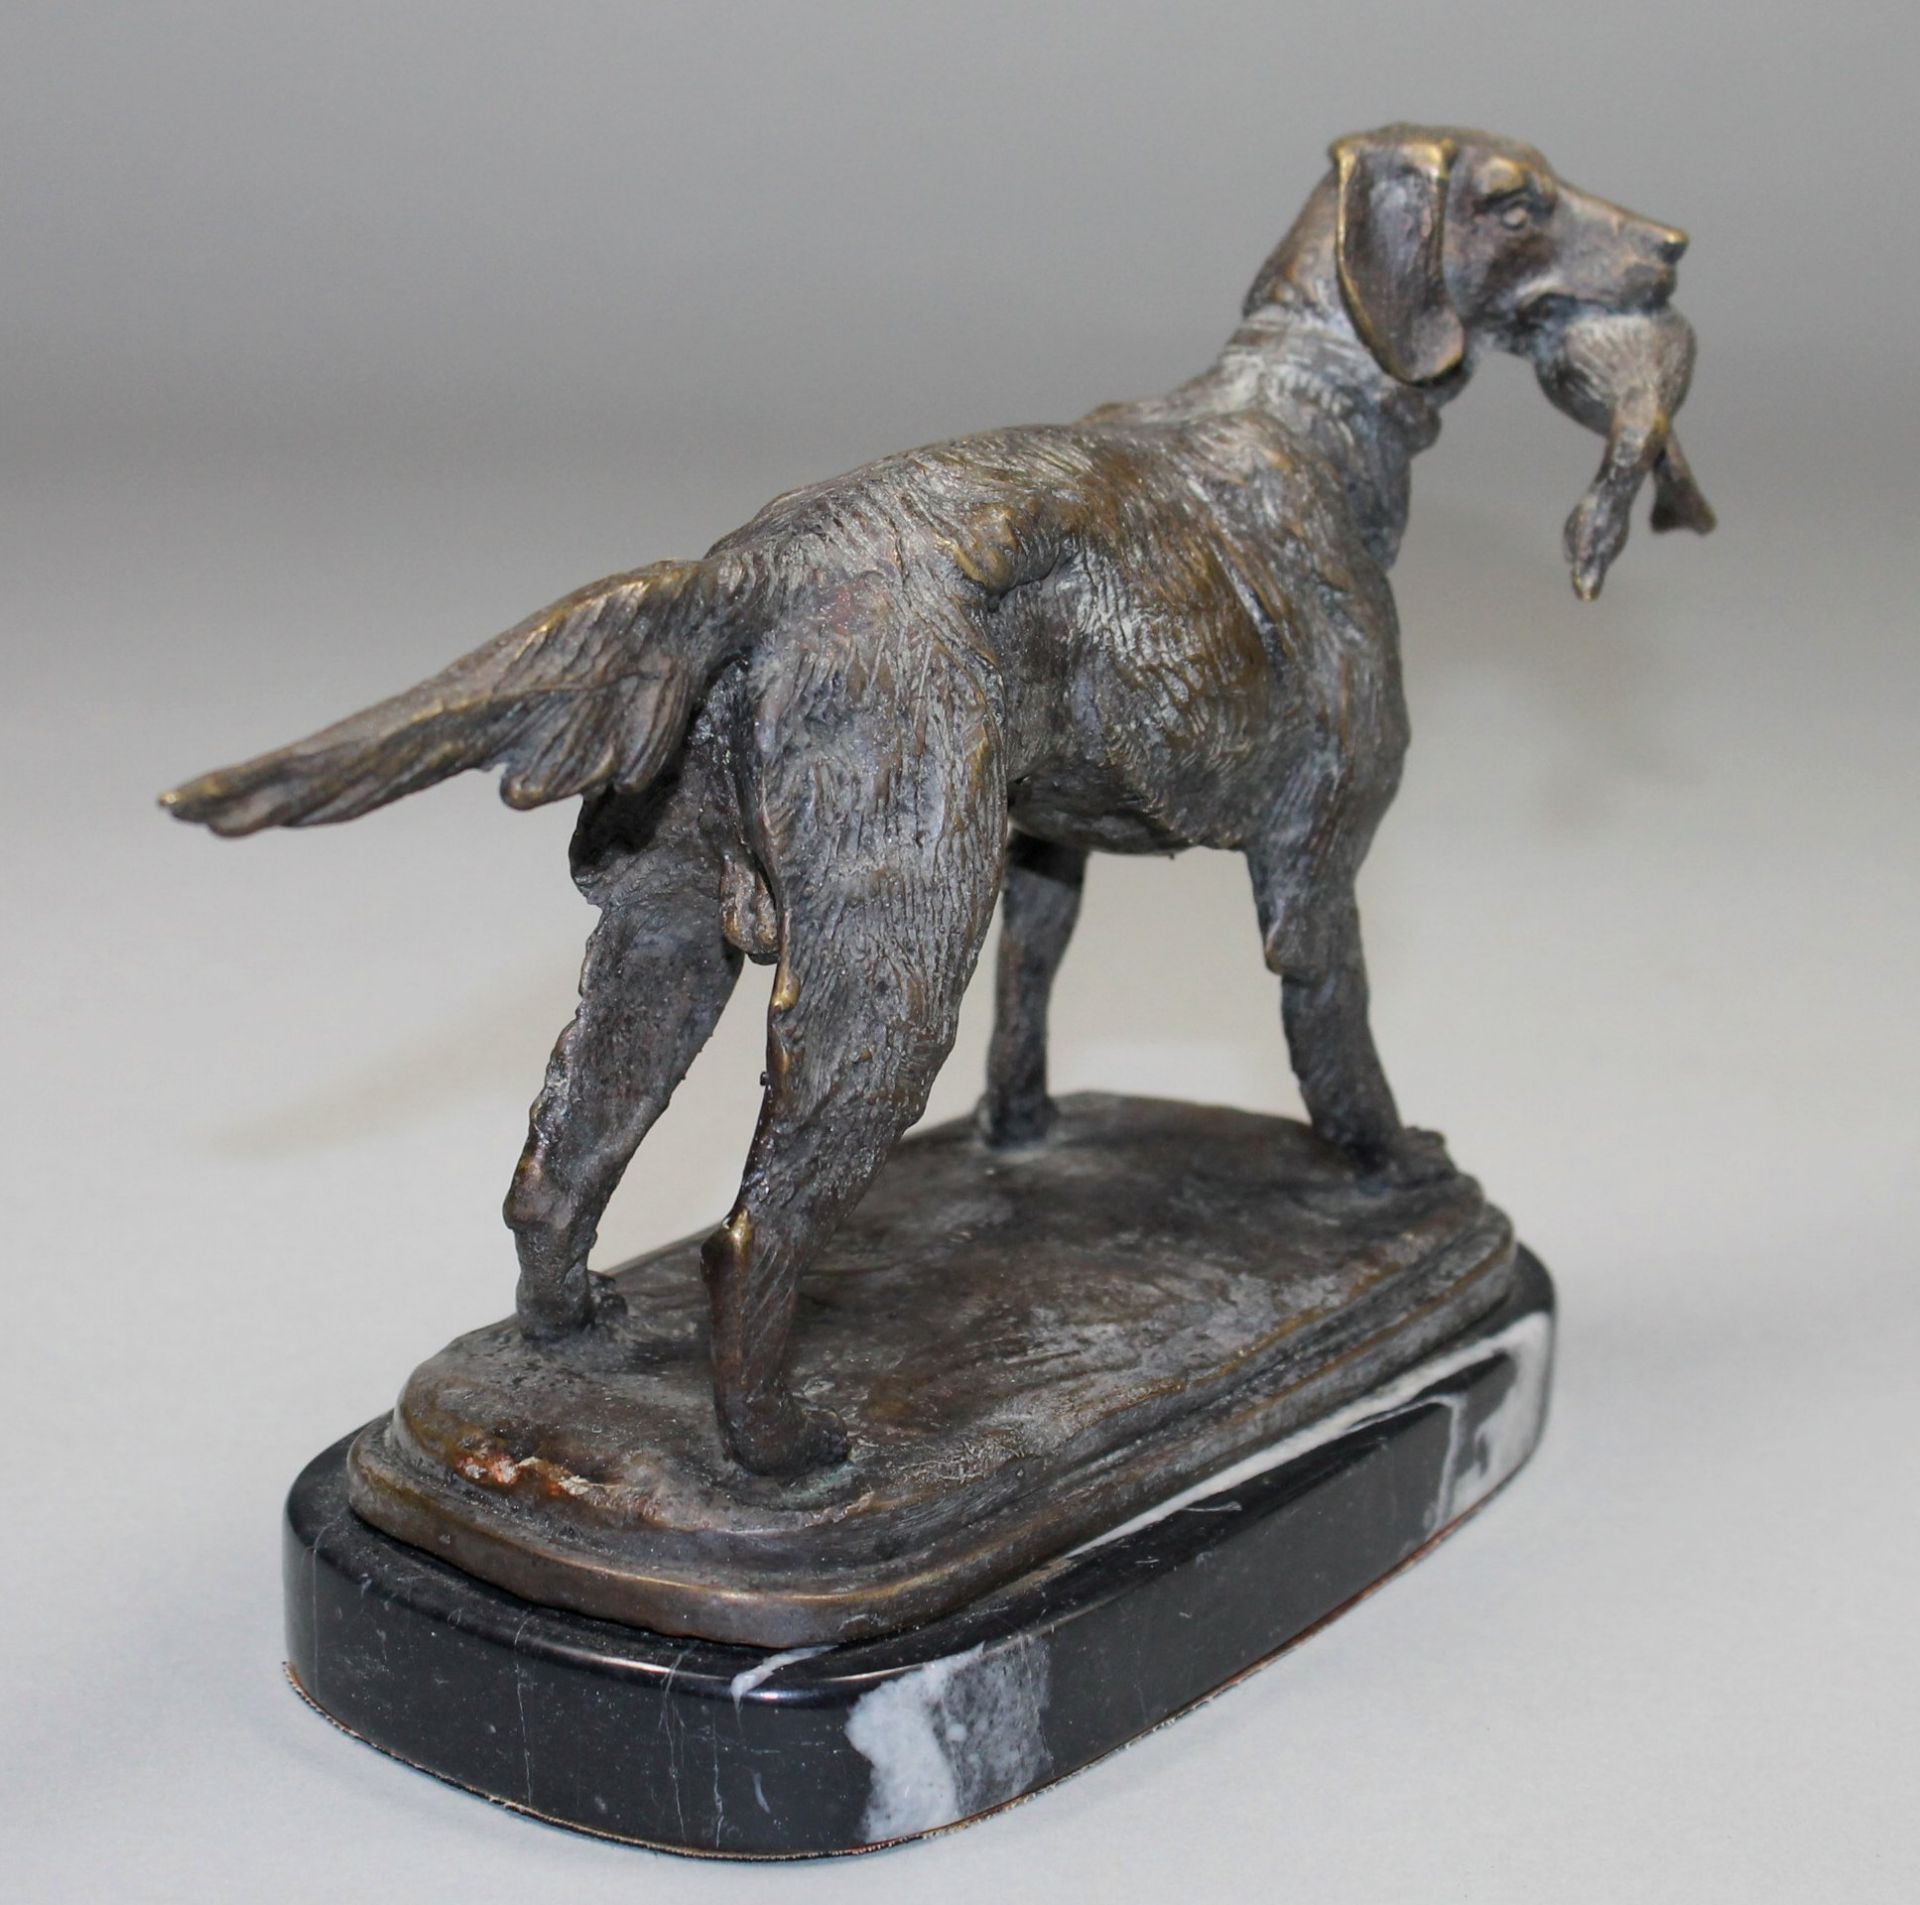 1 Bronzefigur auf Marmorplinthe "Jagdhund mit Beute im Maul", keine Signatur erkennbar, ca. 18,5cm x - Bild 4 aus 4